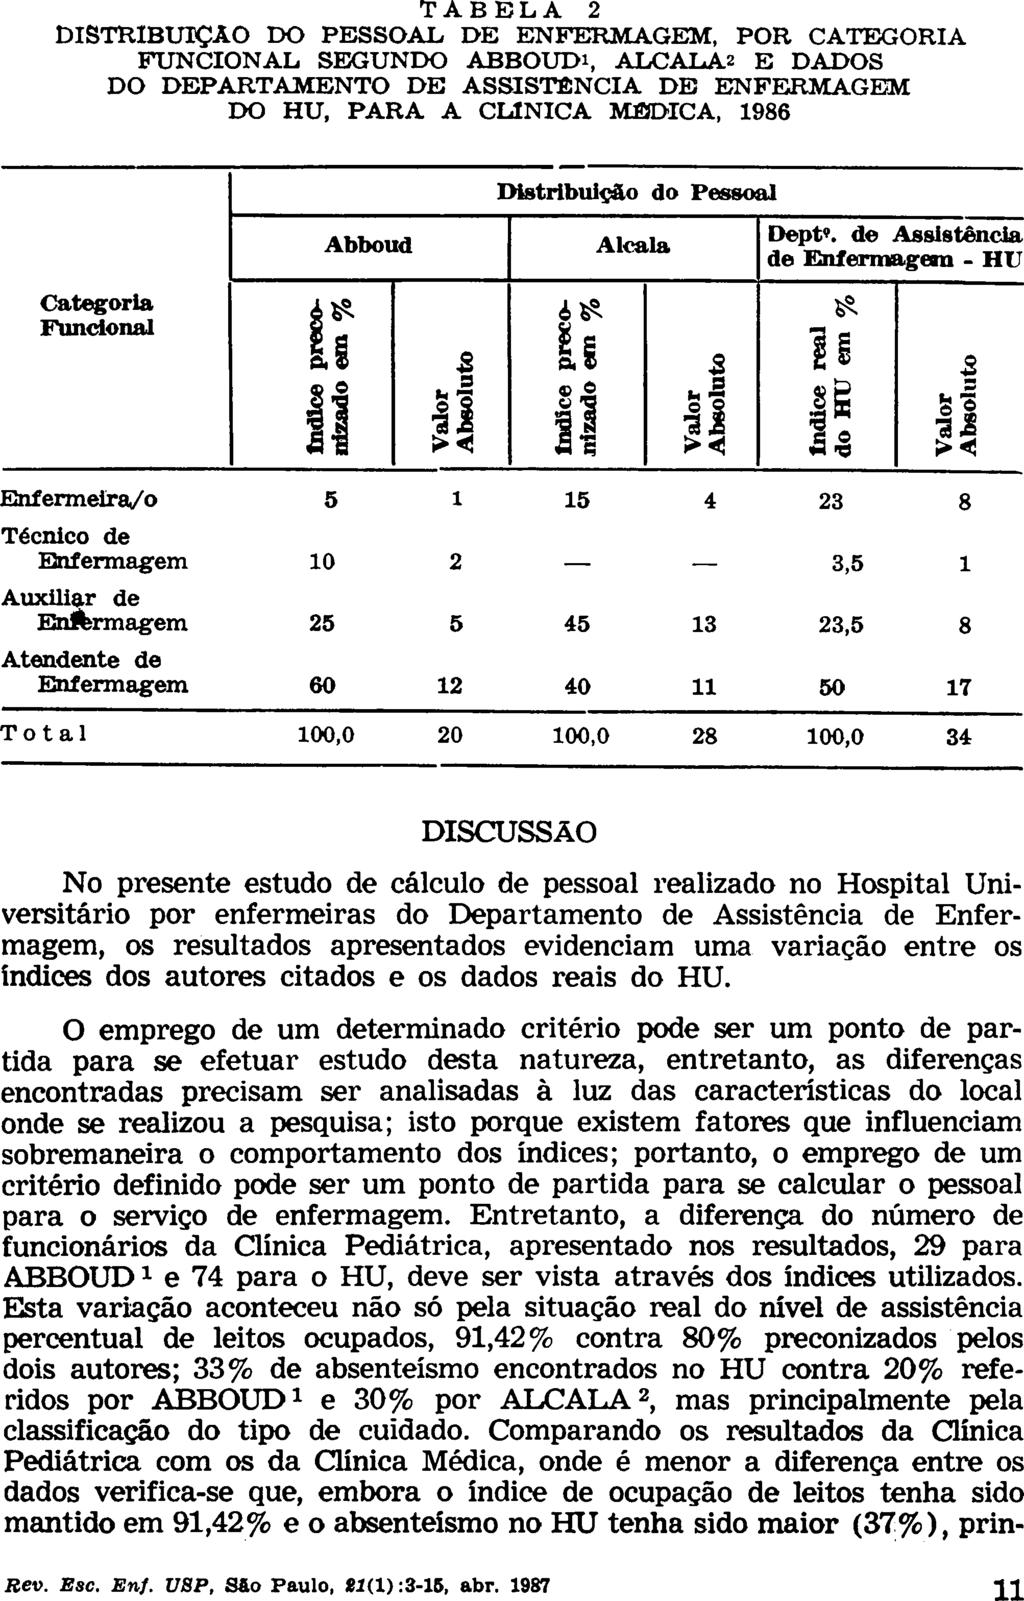 TABELA 2 DISTRIBUIÇÃO DO PESSOAL DE ENFERMAGEM, POR CATEGORIA FUNCIONAL SEGUNDO ABBOUDi, ALCALÁ2 E DADOS DO DEPARTAMENTO DE ASSISTÊNCIA DE ENFERMAGEM DO HU, PARA A CLINICA MÉDICA, 1986 Categoria